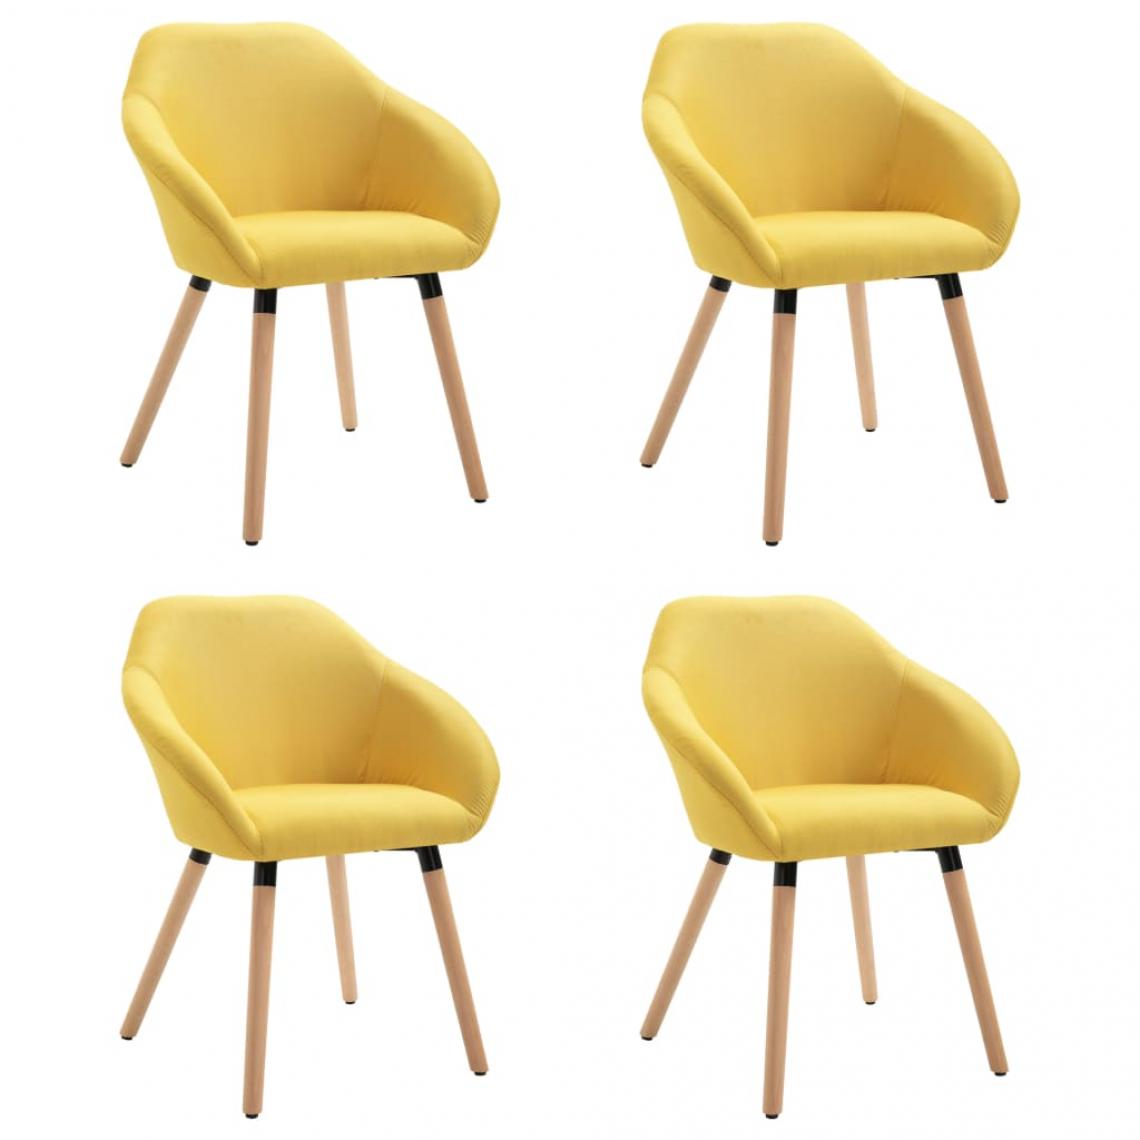 Decoshop26 - Lot de 4 chaises de salle à manger cuisine design moderne tissu jaune CDS021645 - Chaises